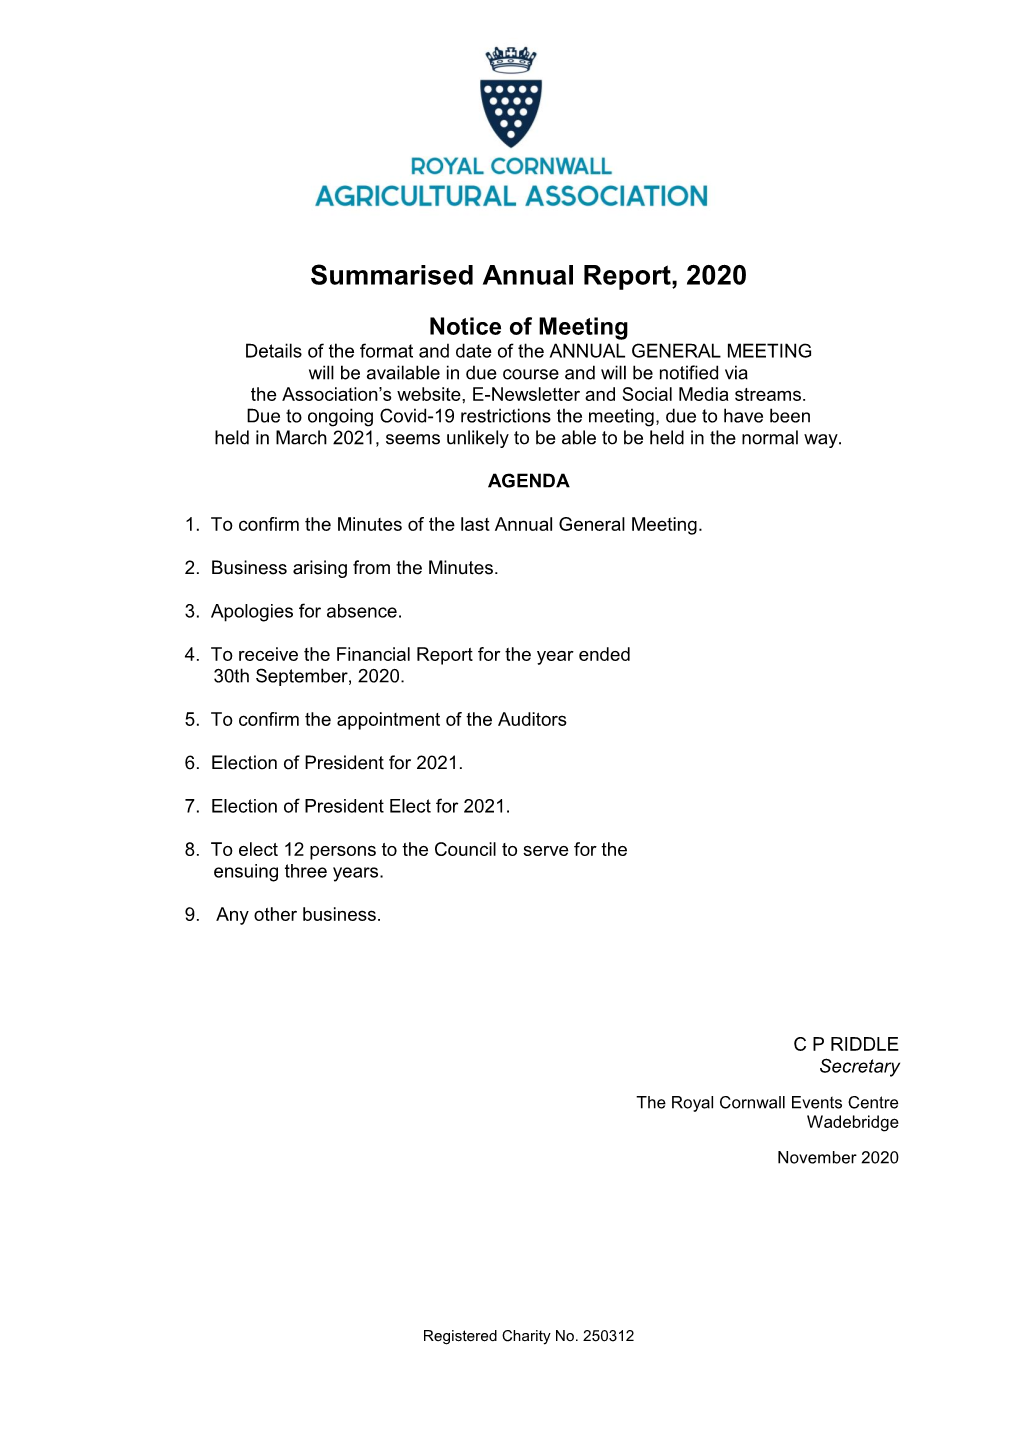 Summarised Annual Report 2020